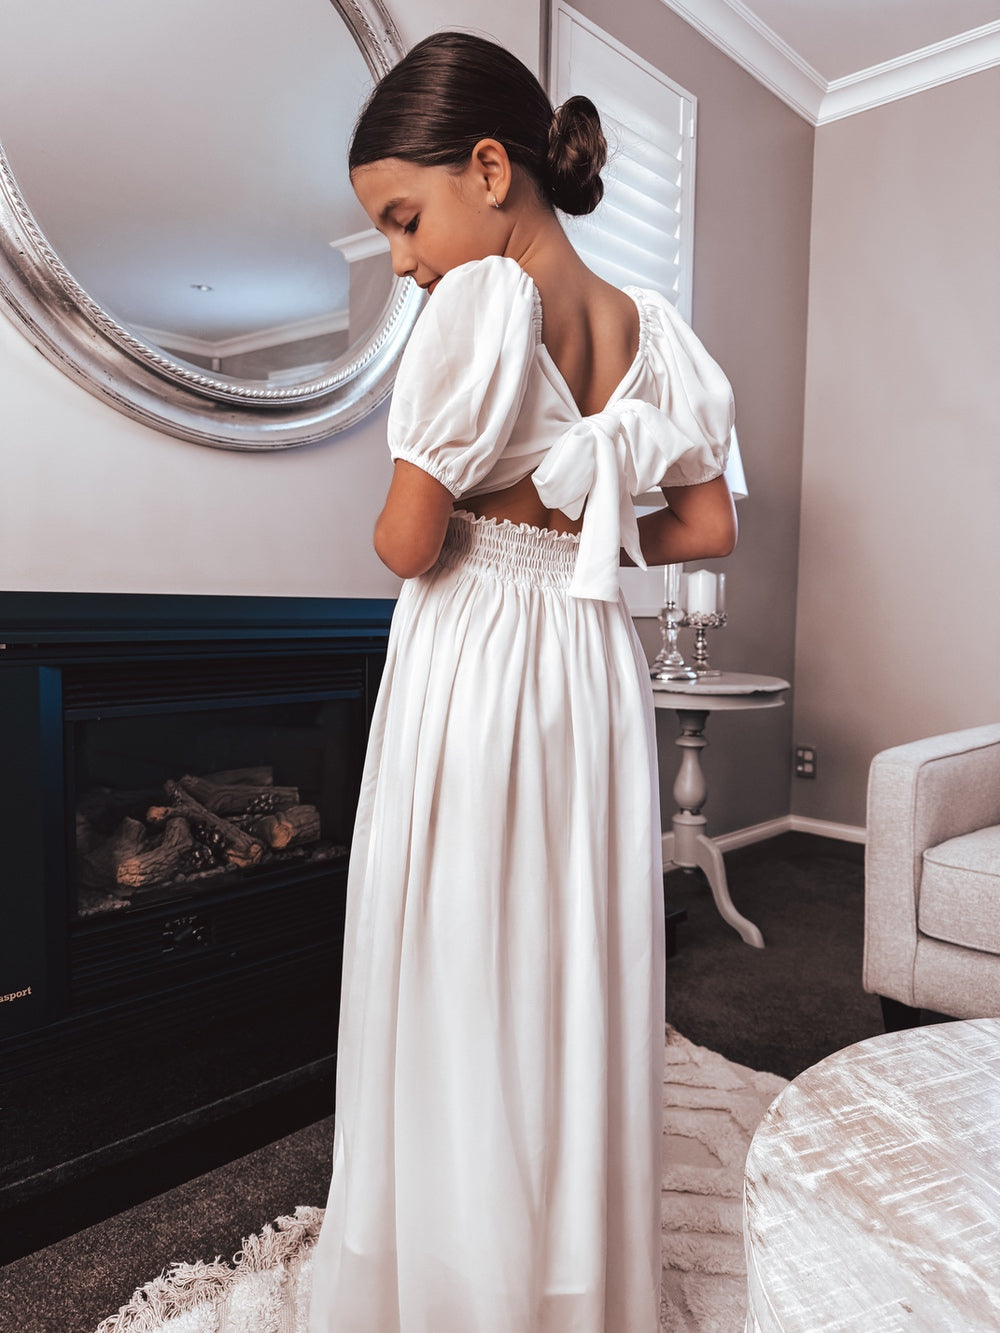 Emilia Girls White Dress - Communion Dresses